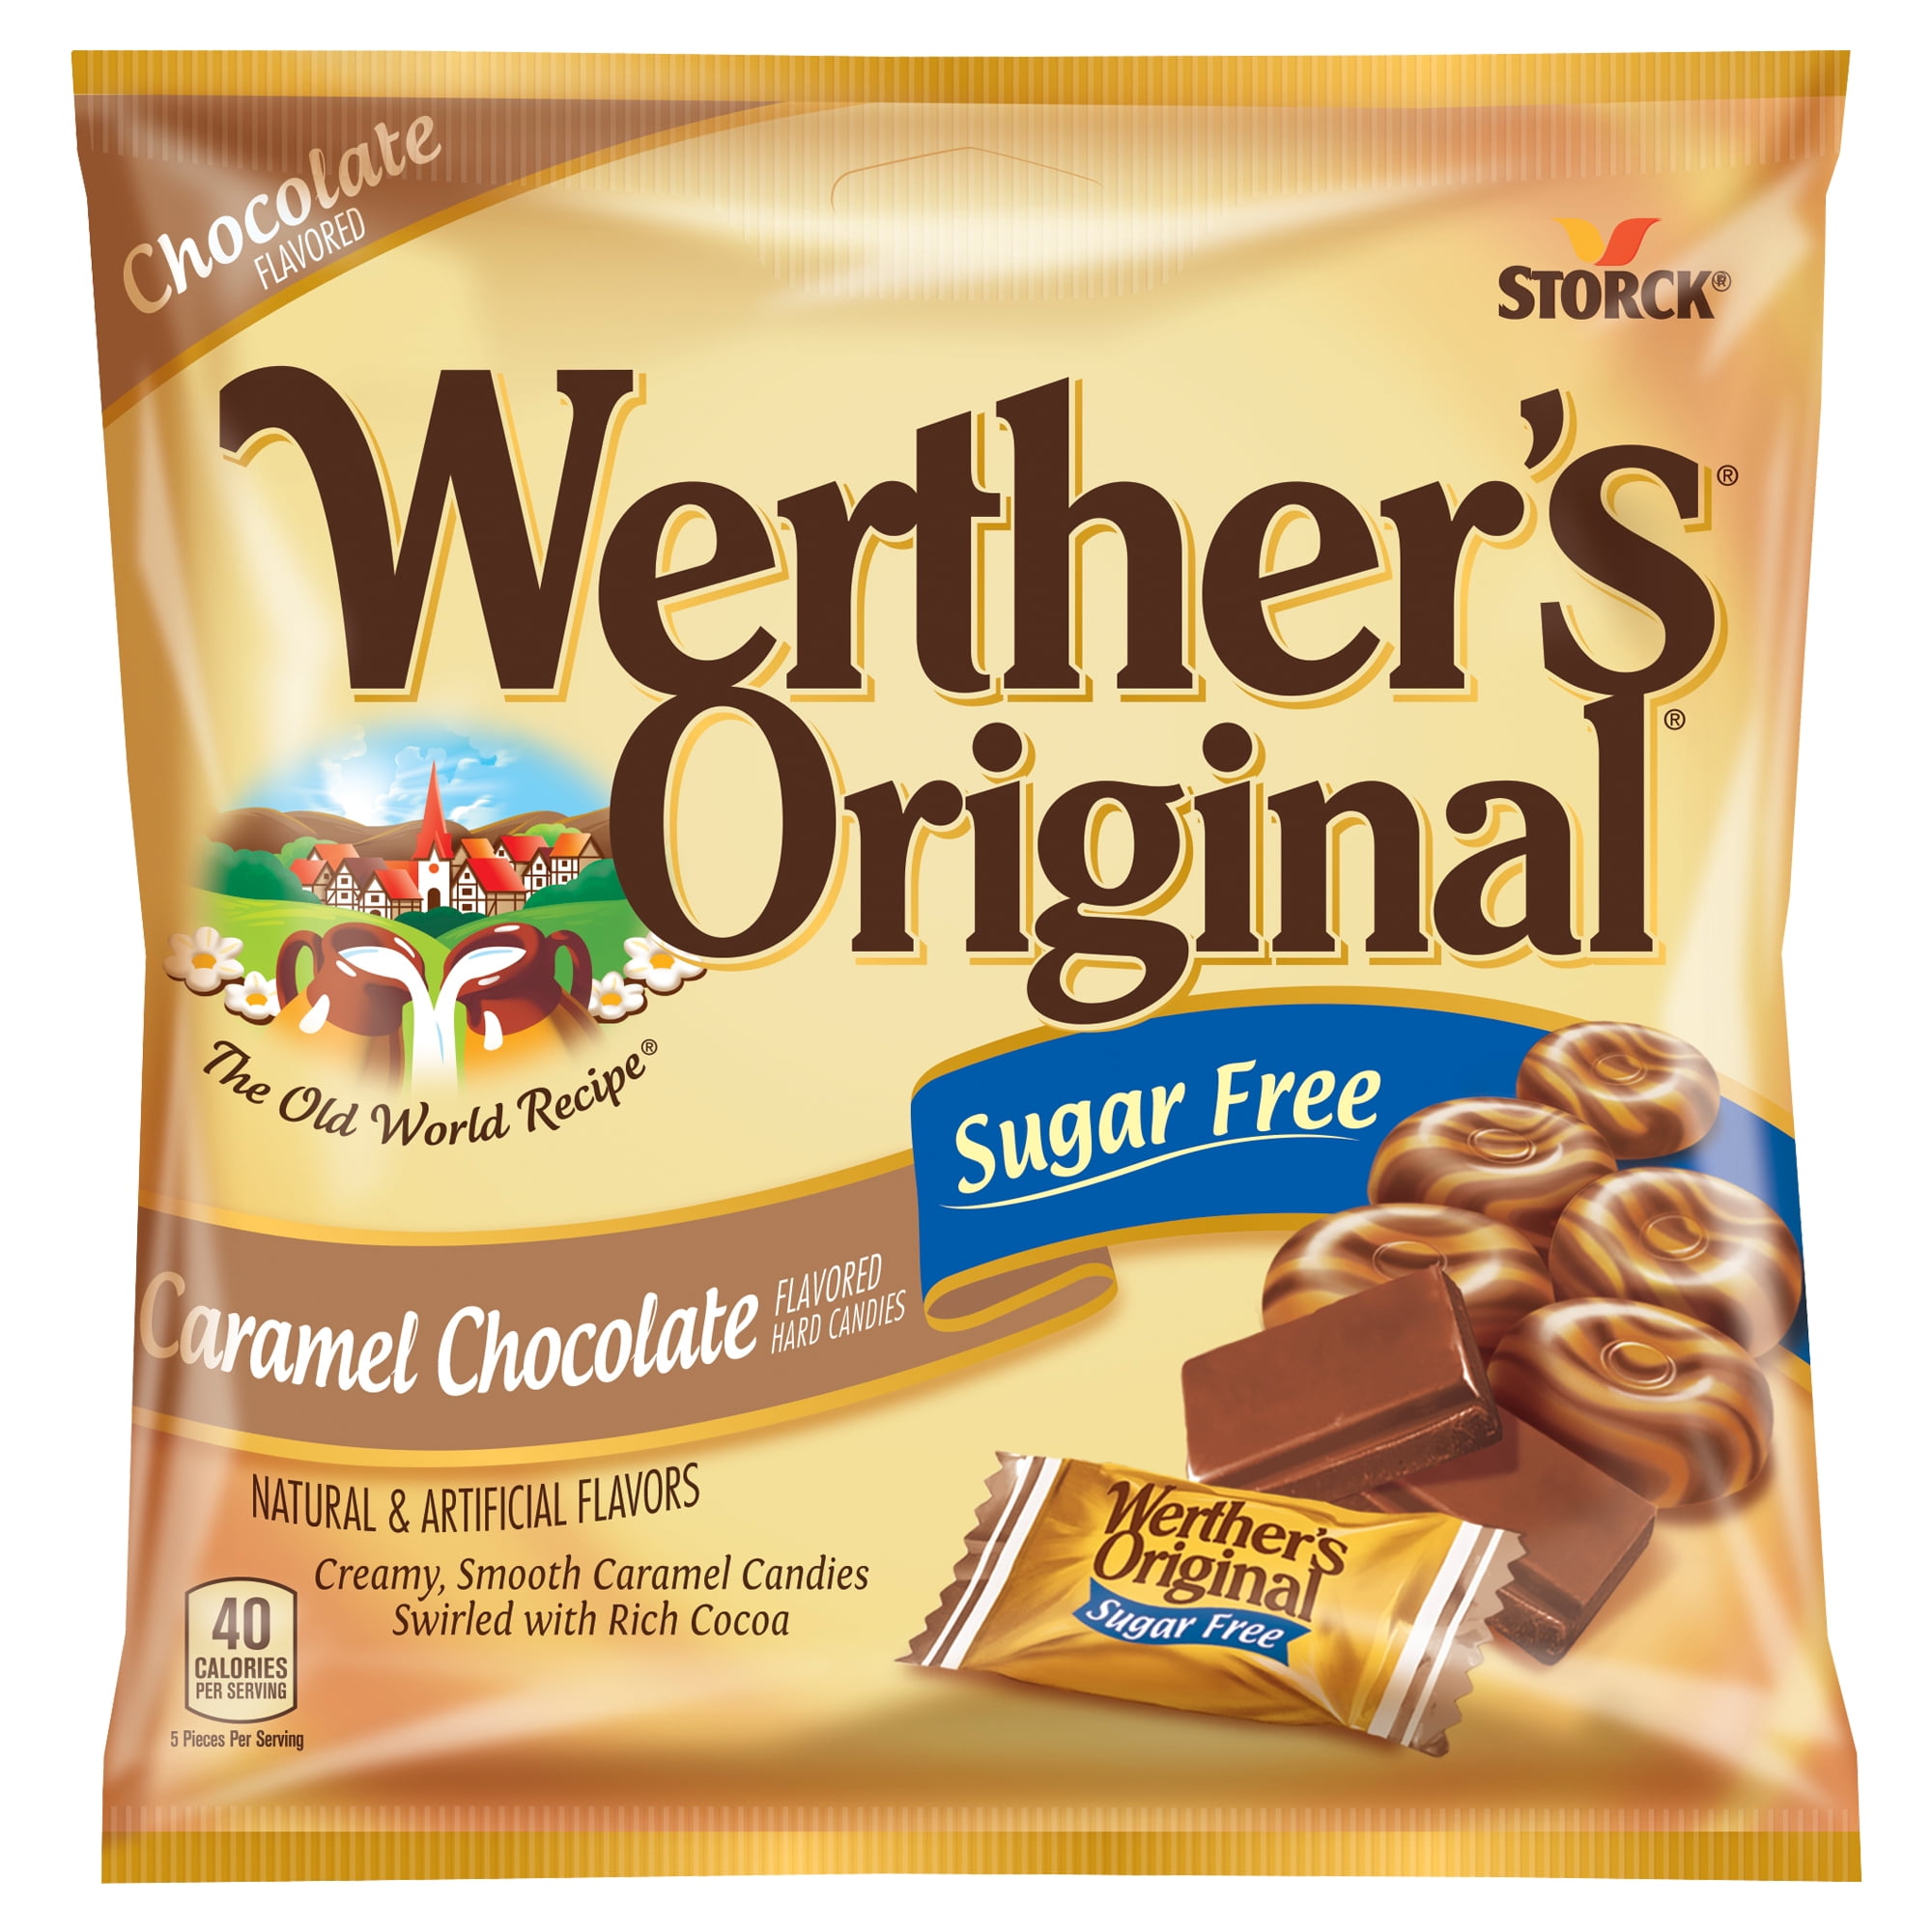 Storck Werther's Original Sugar-Free Caramel Chocolate Hard Candies, 2.35  oz. 